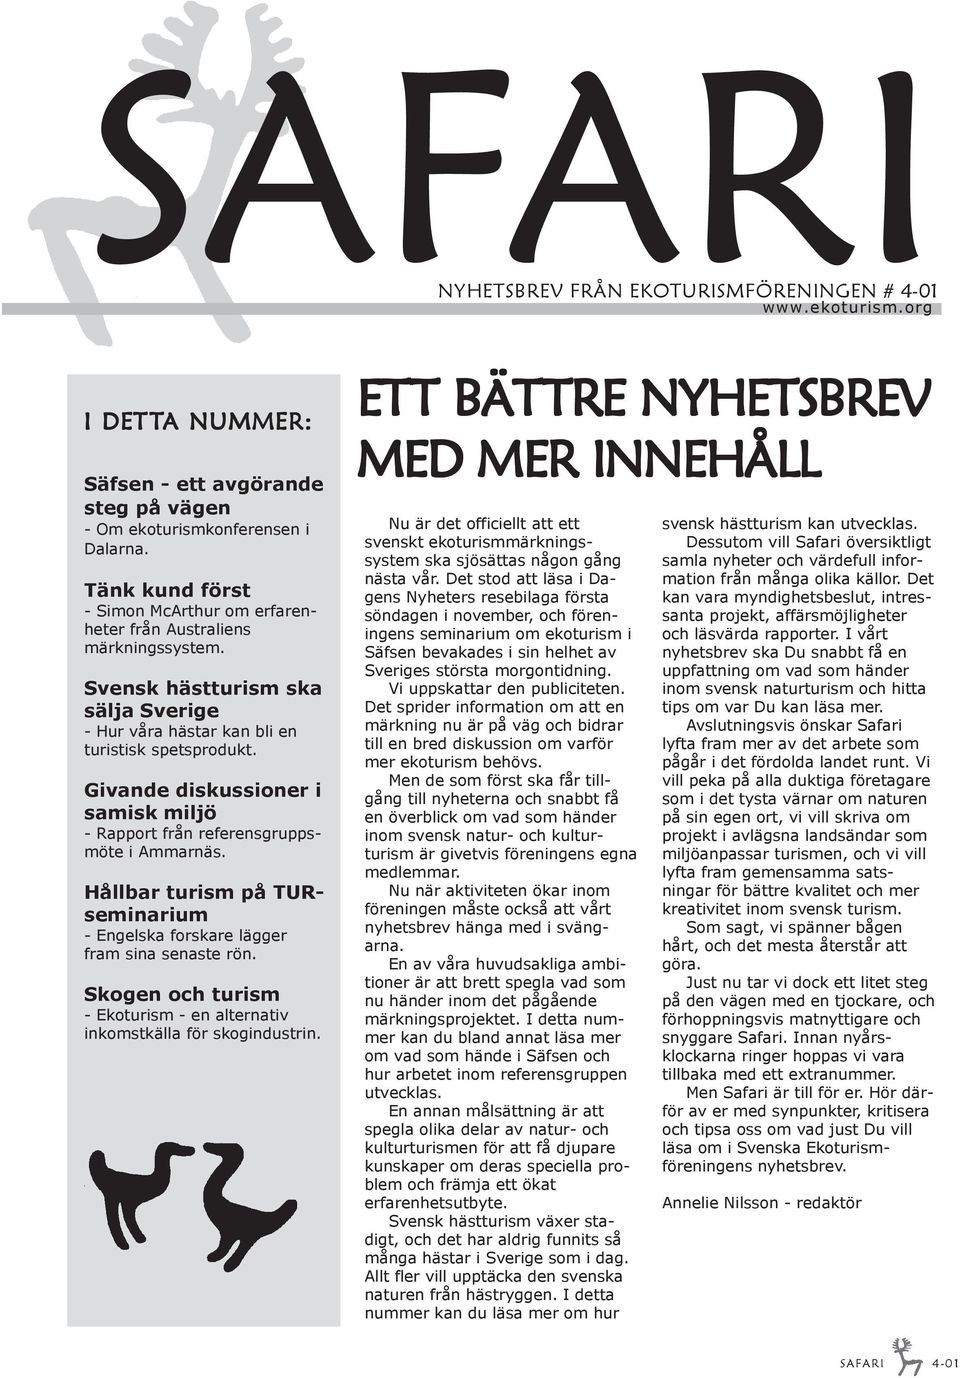 Givande diskussioner i samisk miljö - Rapport från referensgruppsmöte i Ammarnäs. Hållbar turism på TURseminarium - Engelska forskare lägger fram sina senaste rön.